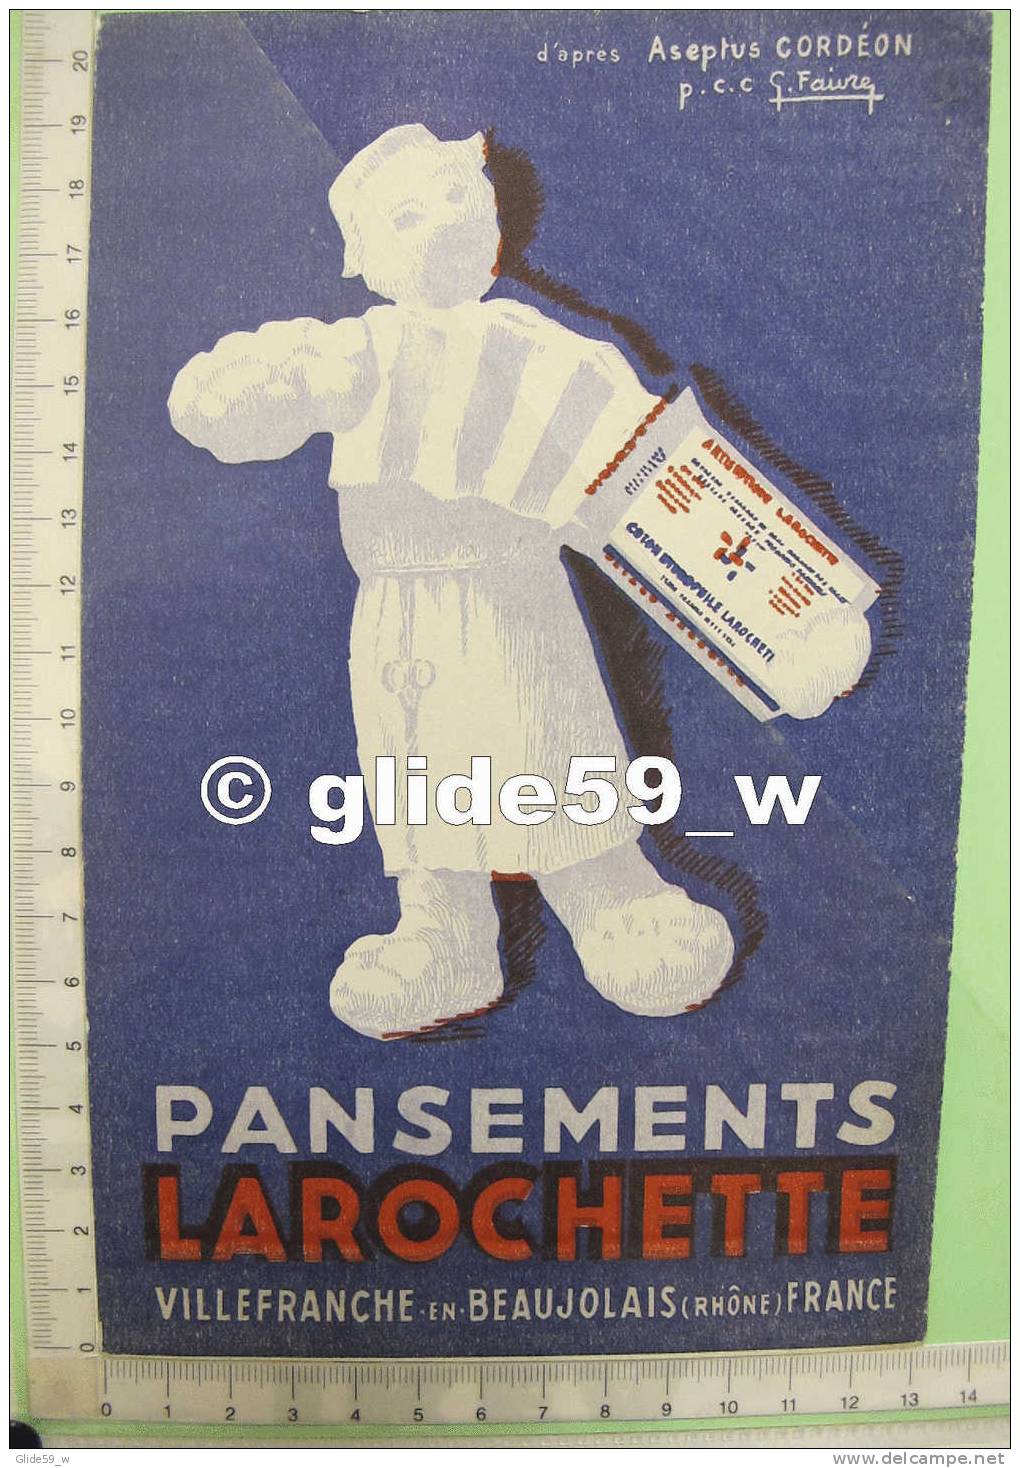 Buvard Pansements LAROCHETTE - Villefranche-en-Beaujolai S (d'après Aseptus Cordéon) (n° 1) - 1 - Chemist's